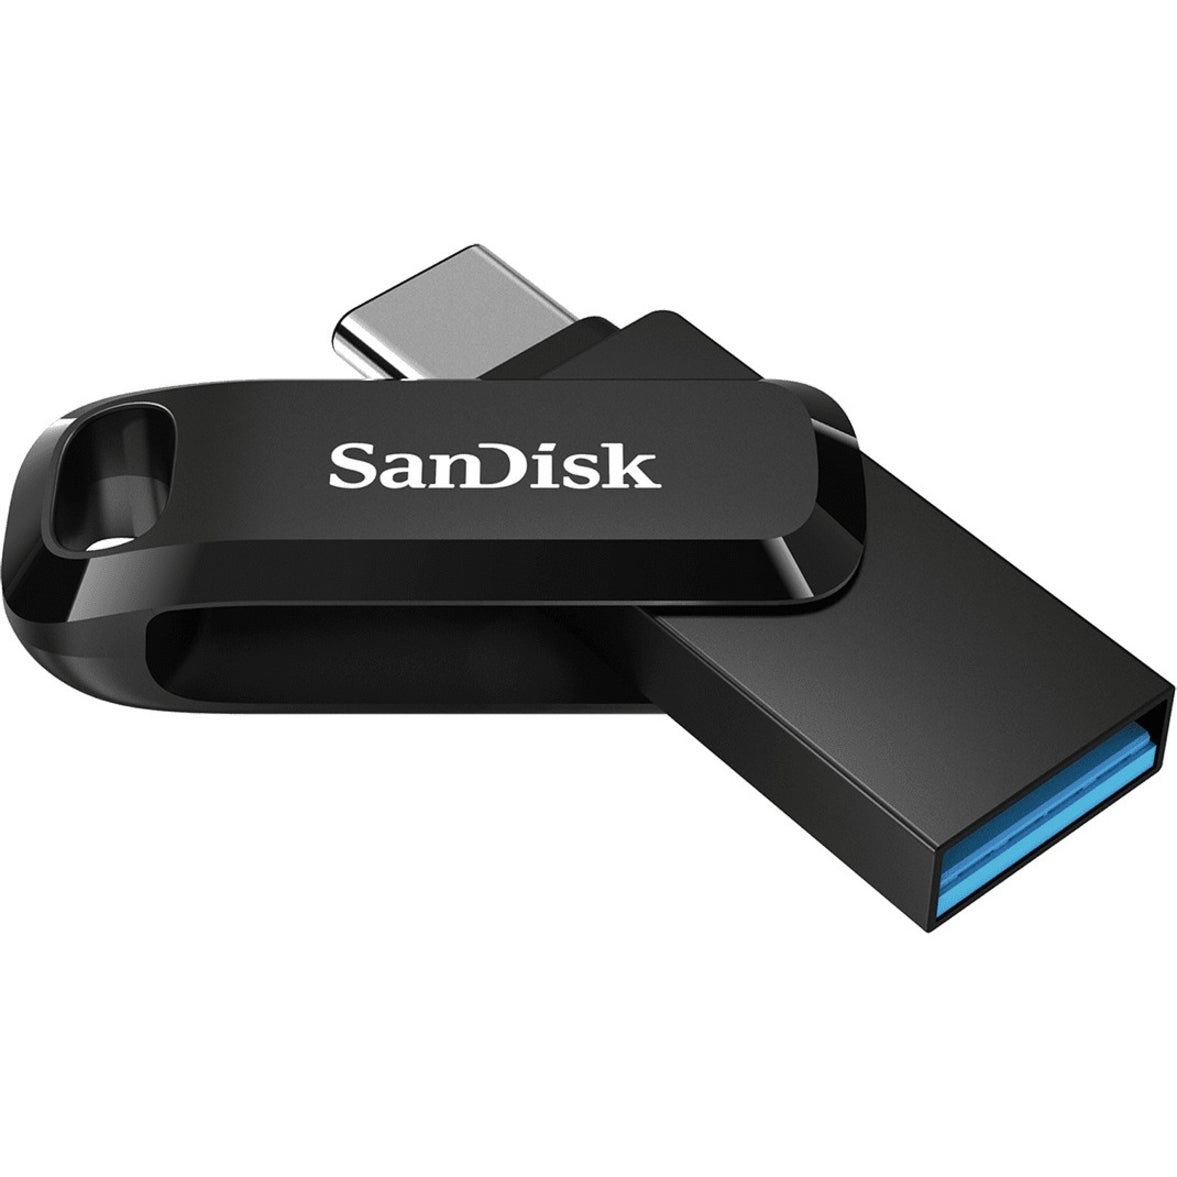 سانديسك SDDDC3-032G-A46 الترا درايف جو USB نوع-سي 32GB، سرعات نقل سريعة، نسخ احتياطي سهل للملفات.